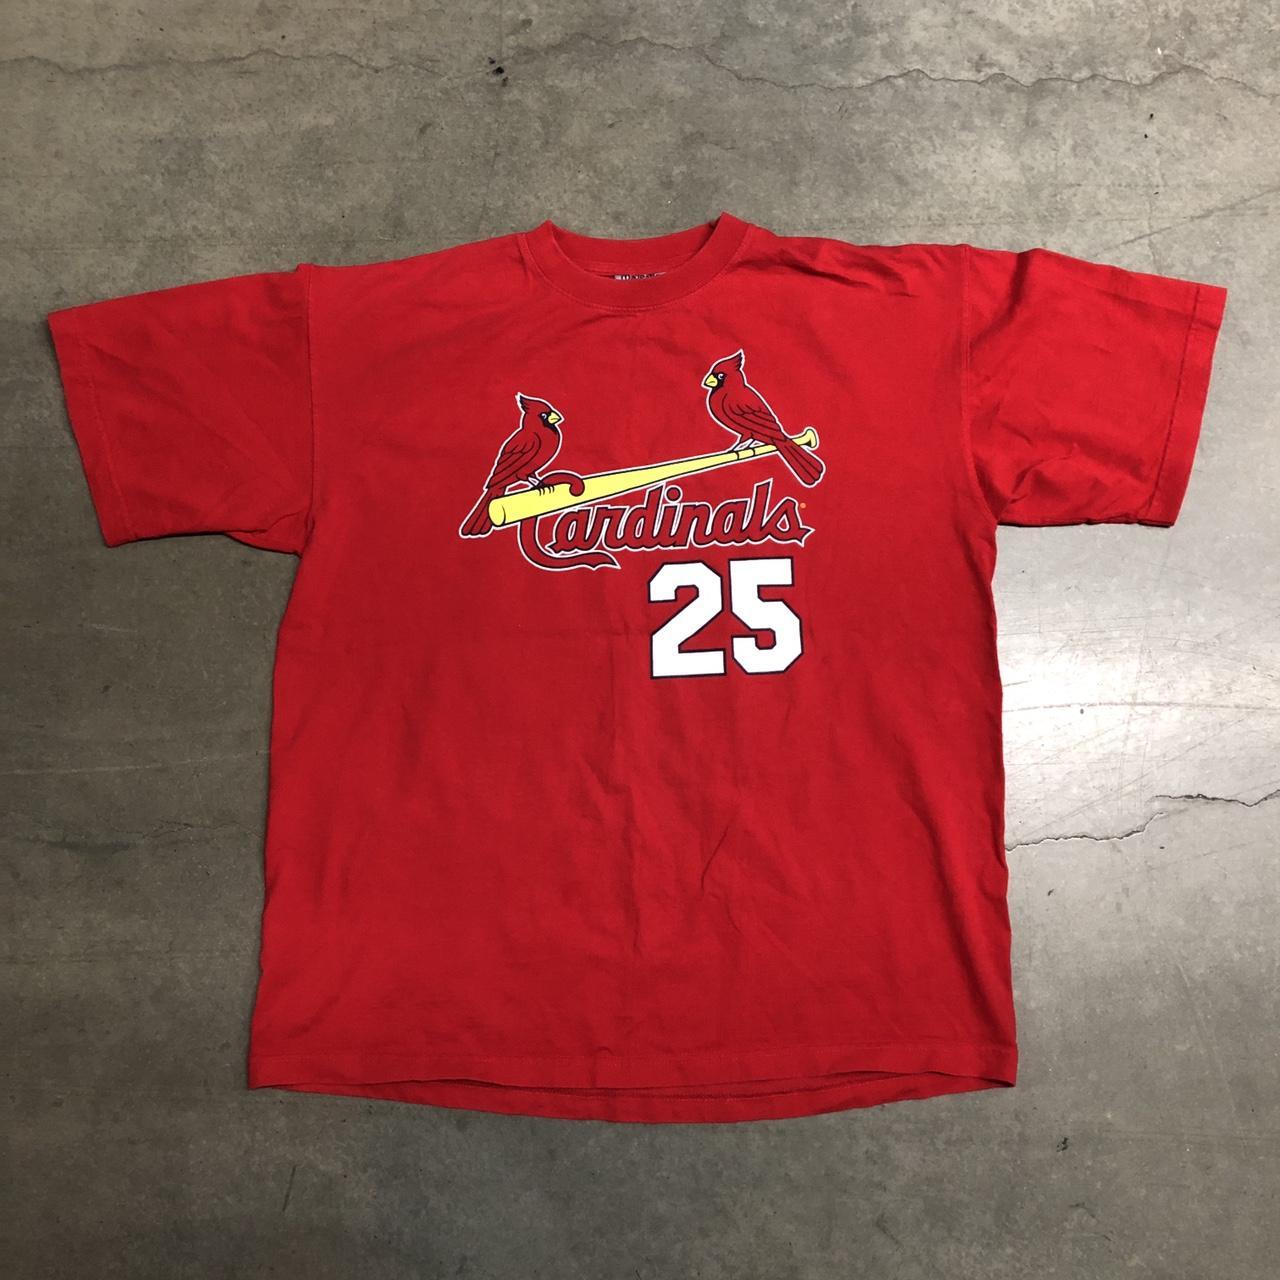 Vintage 90's St. Louis Cardinals T-Shirt